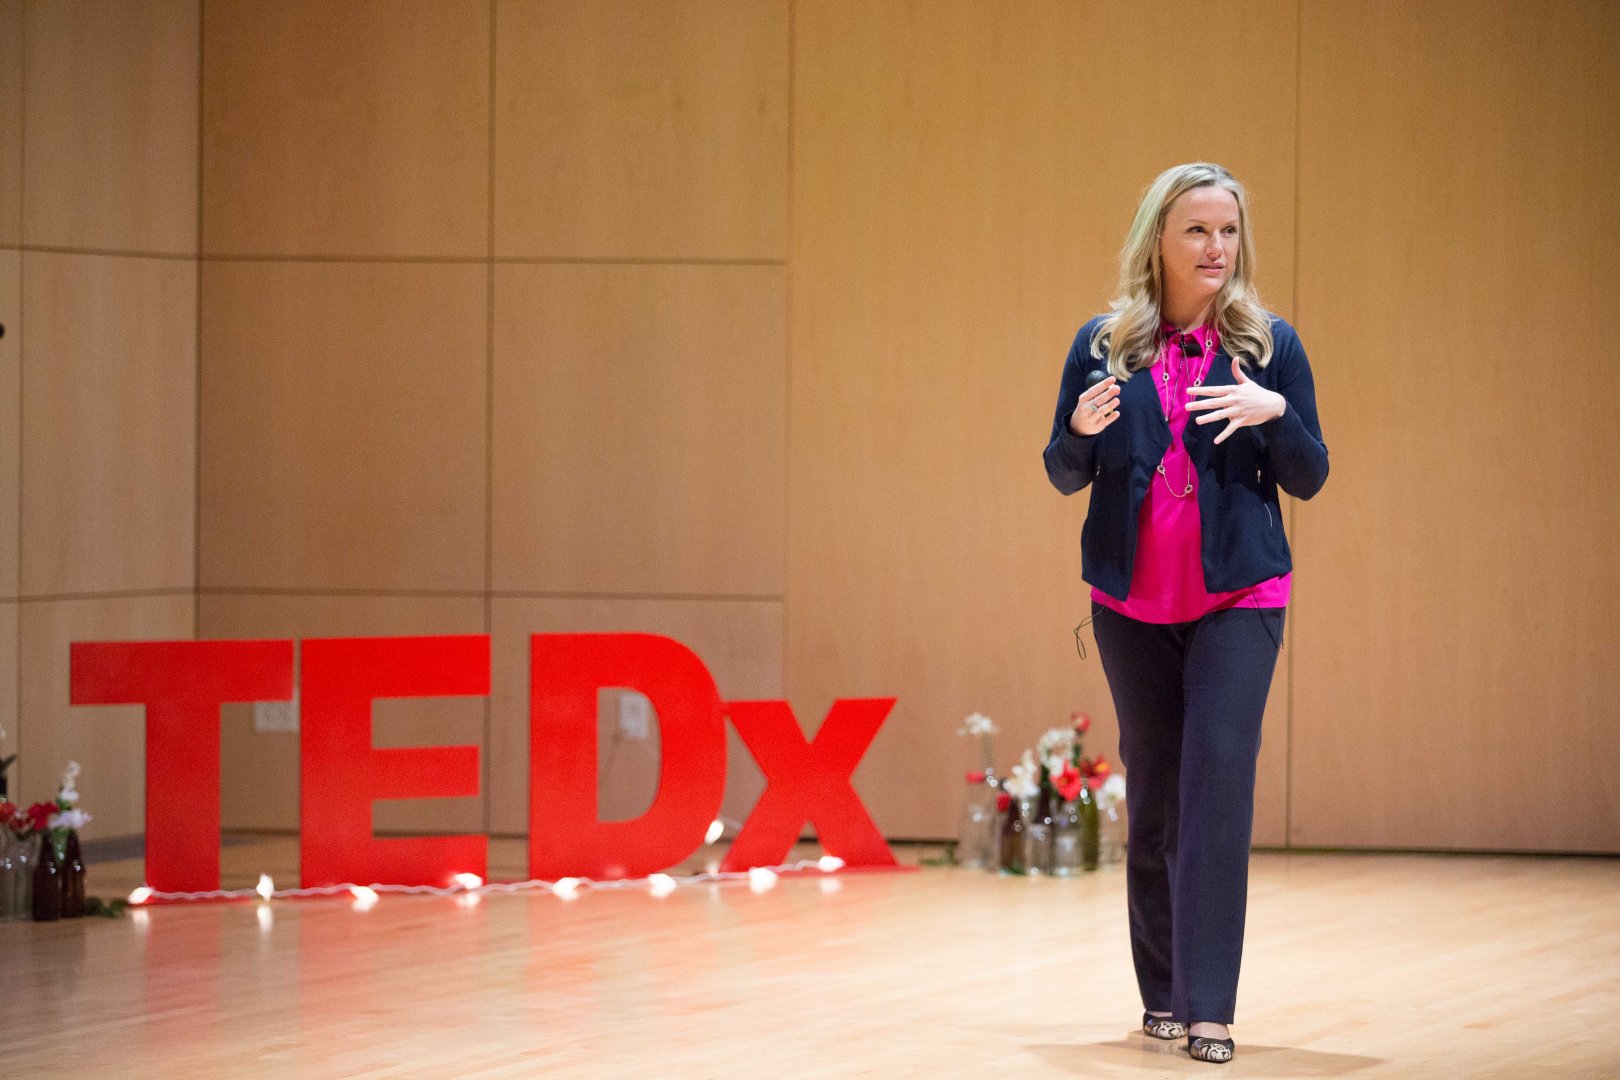 TEDx speaker